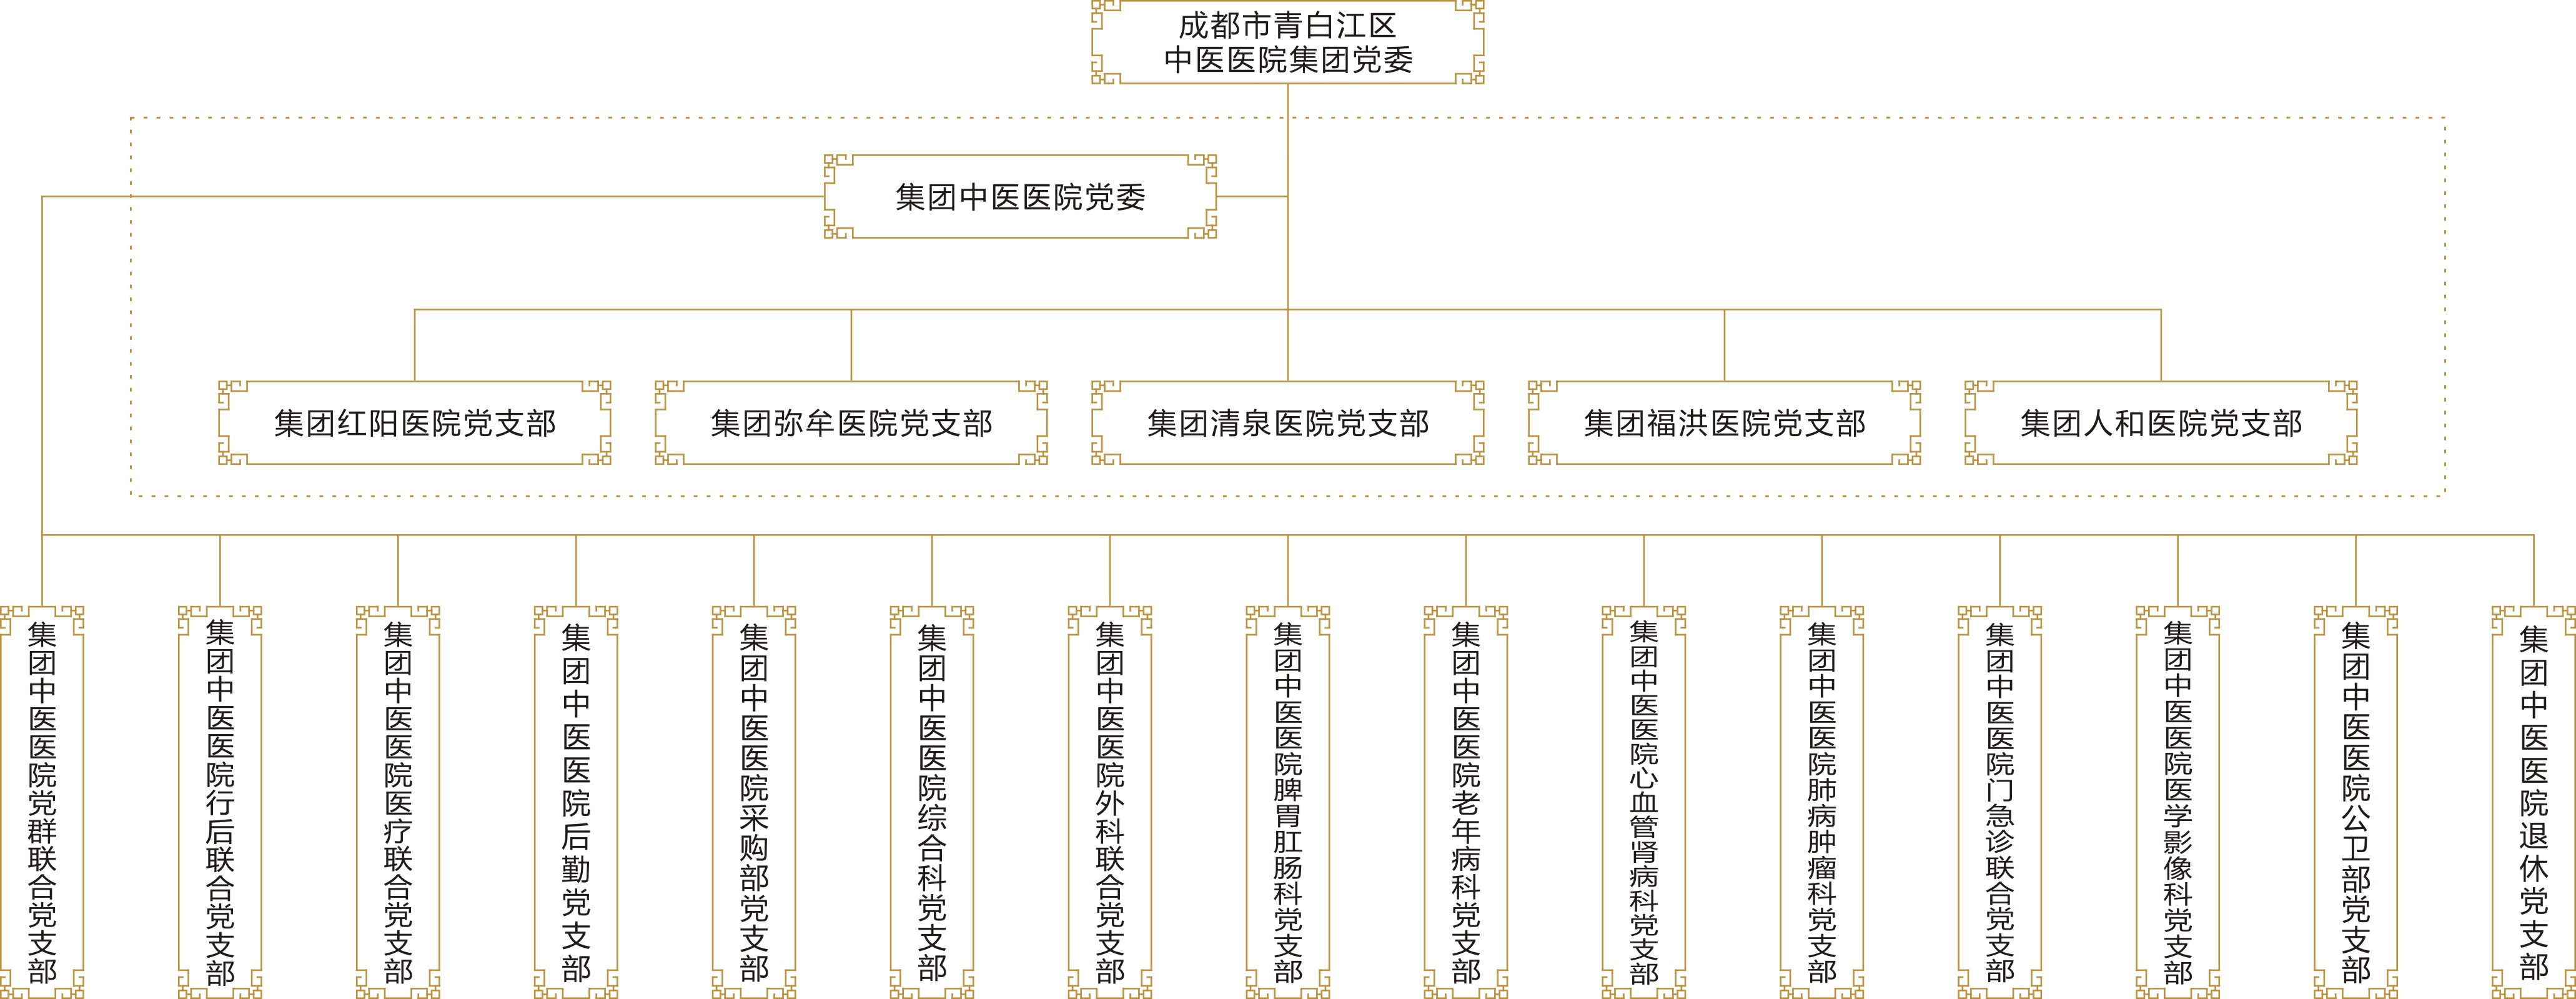 集团党委组织结构图.jpg